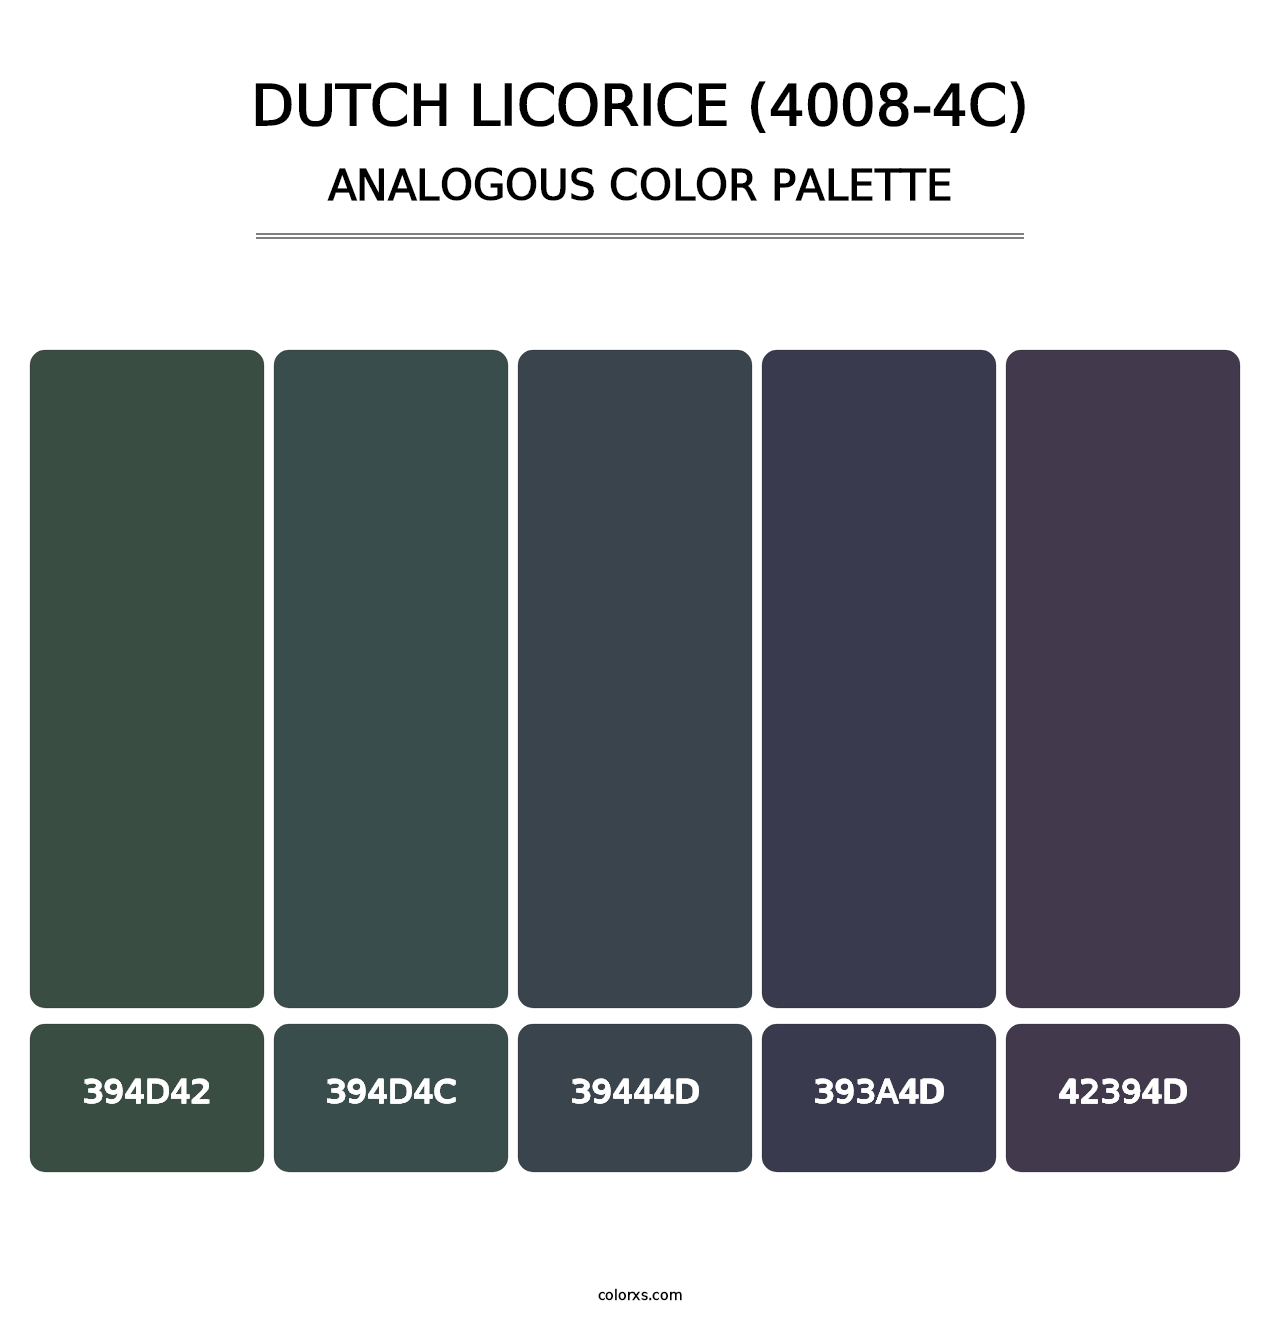 Dutch Licorice (4008-4C) - Analogous Color Palette